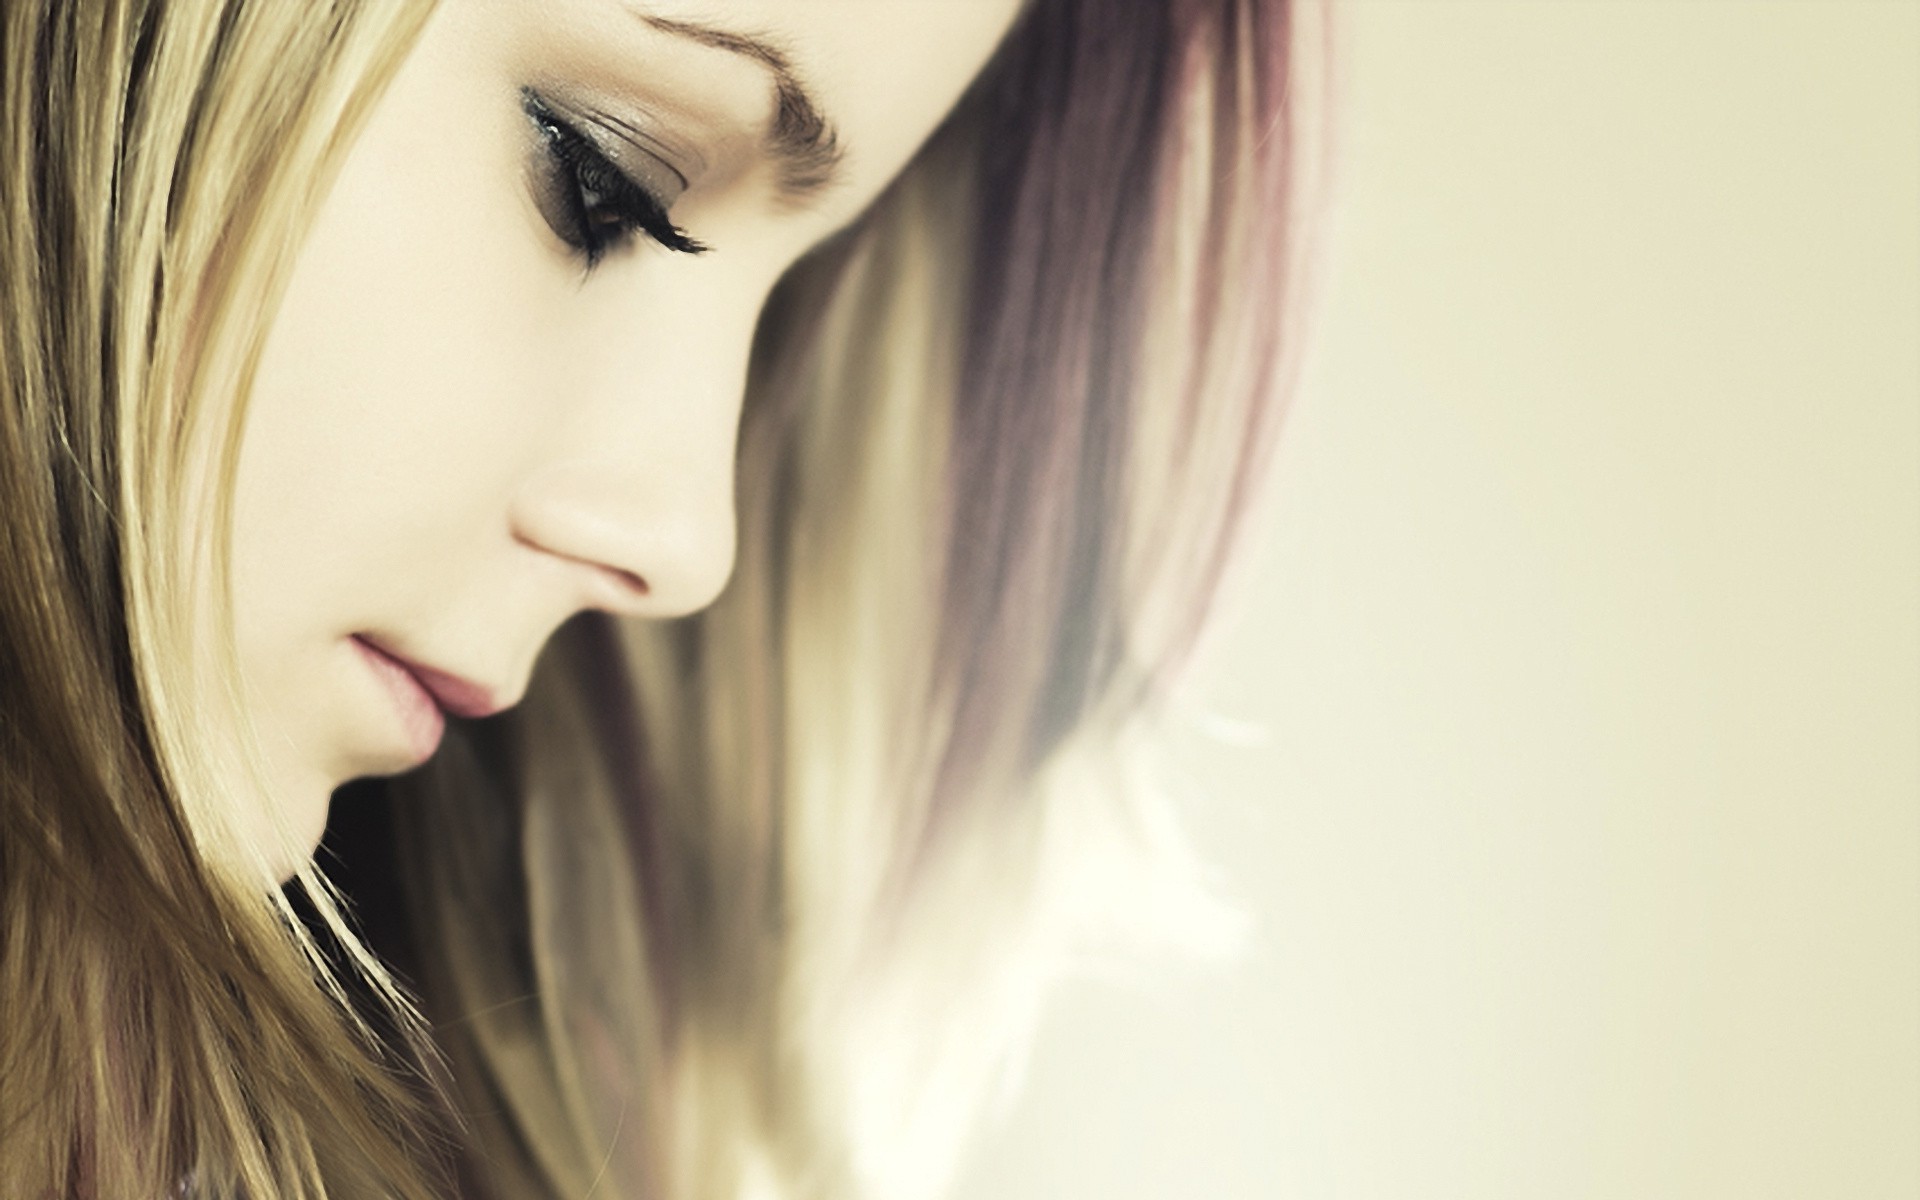 Avril Lavigne Wallpaper For Desktop - HD Wallpaper 